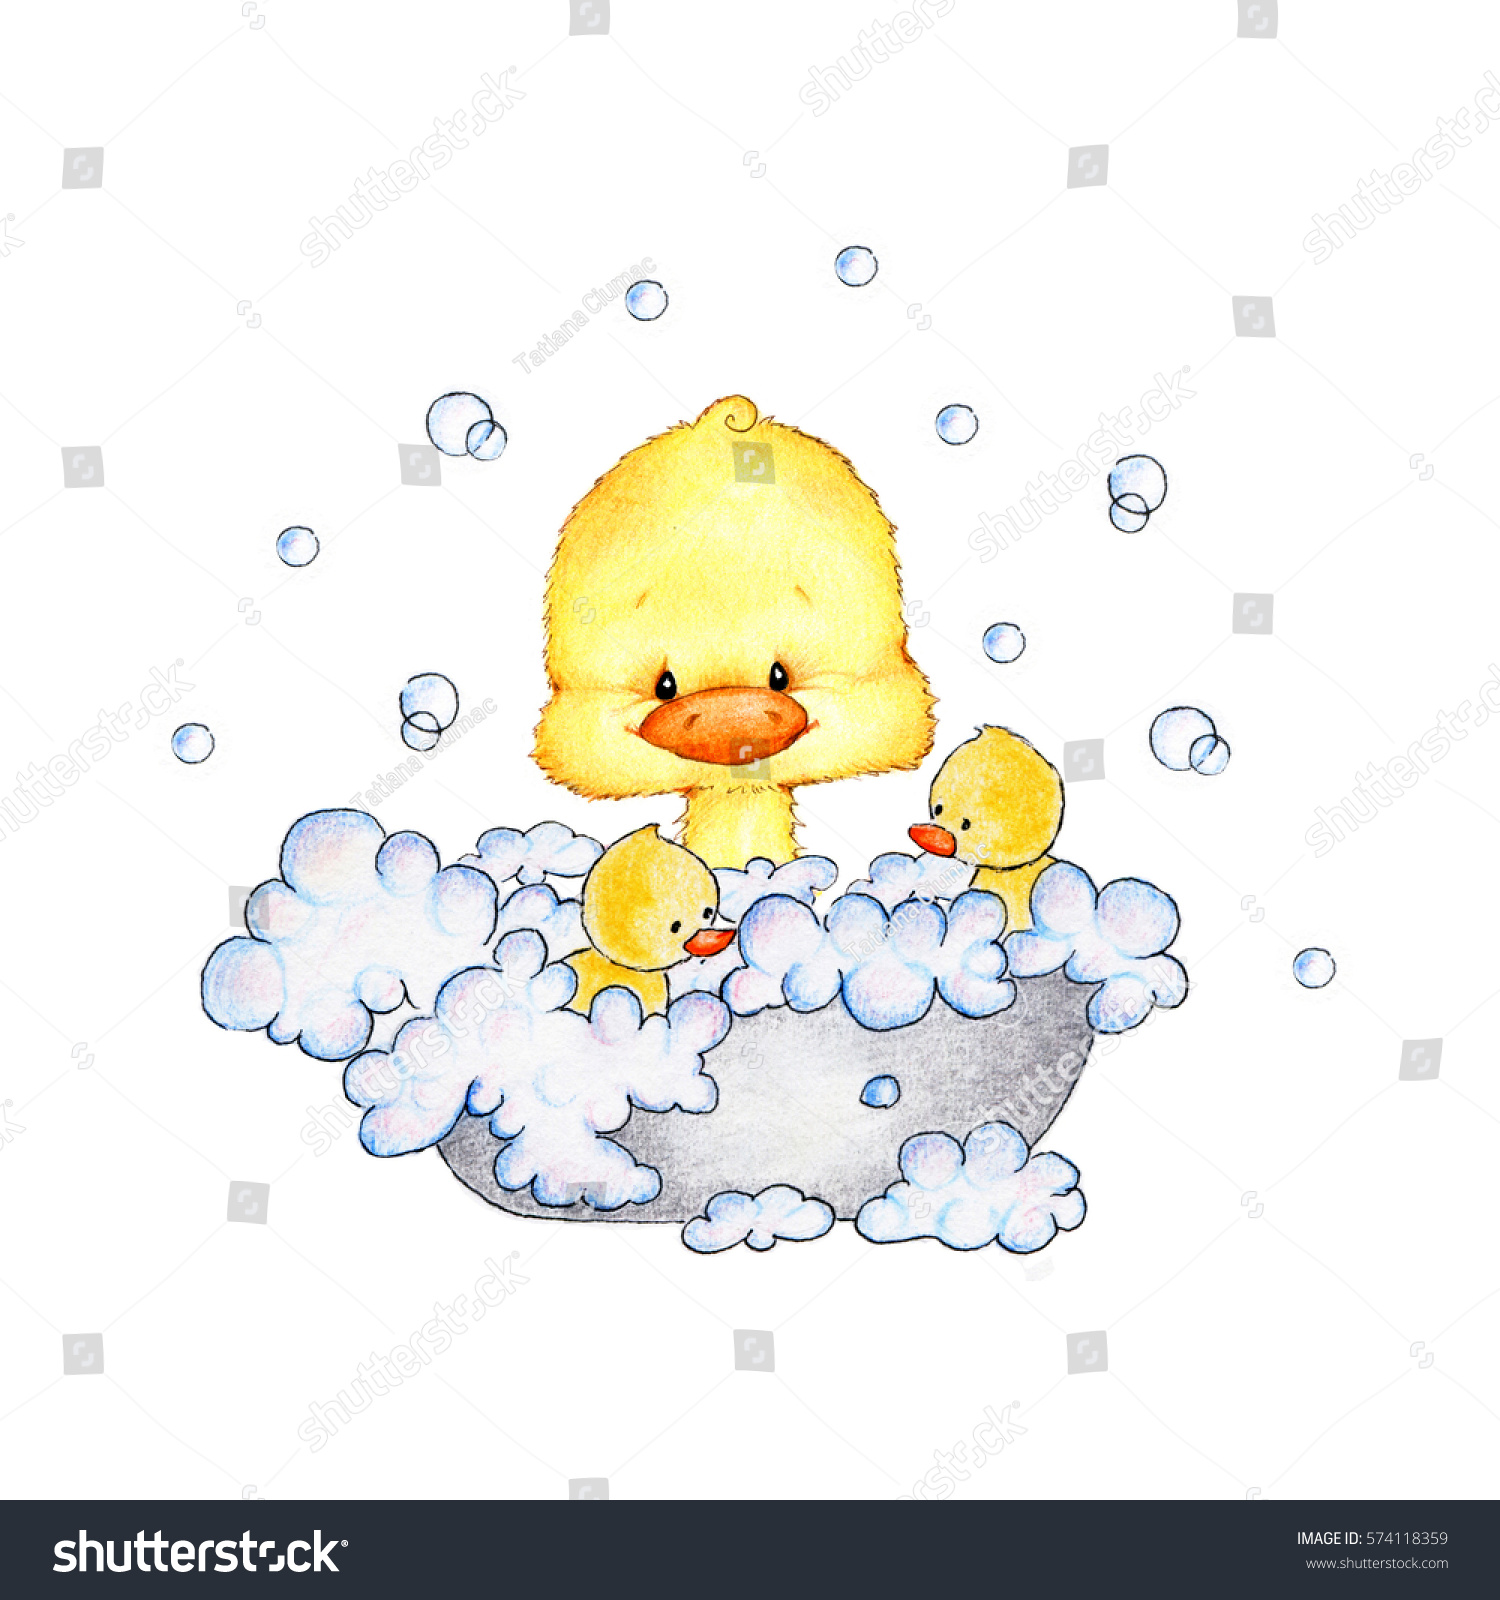 かわいい赤ちゃんアヒルがお風呂に入る のイラスト素材